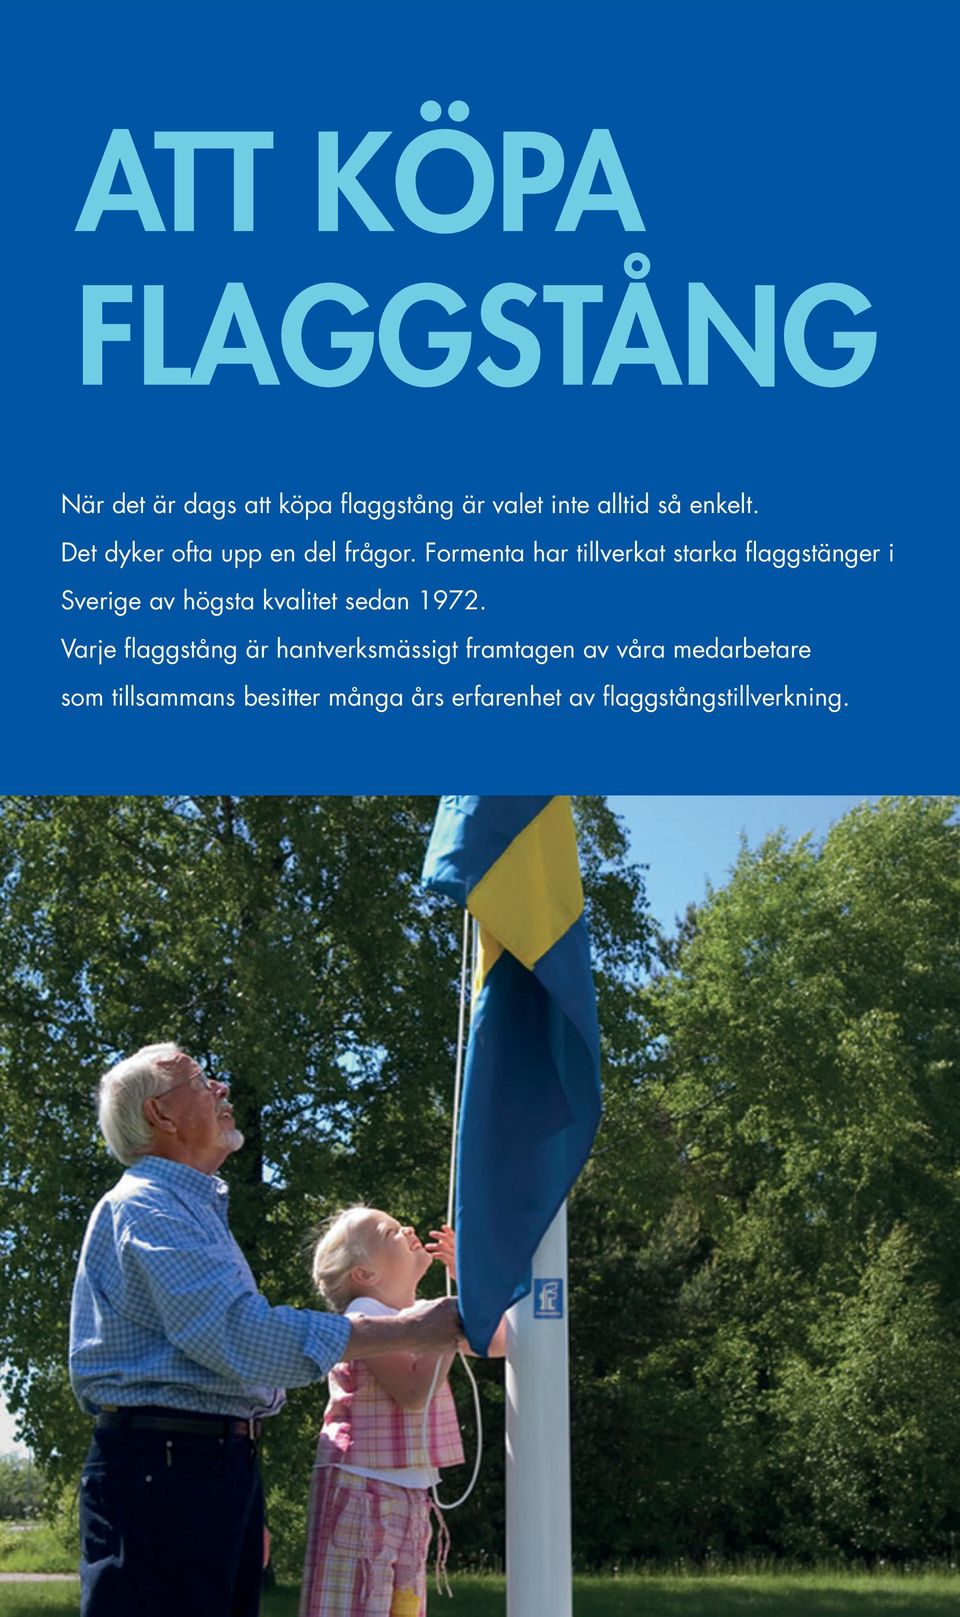 Formenta har tillverkat starka flaggstänger i Sverige av högsta kvalitet sedan 1972.